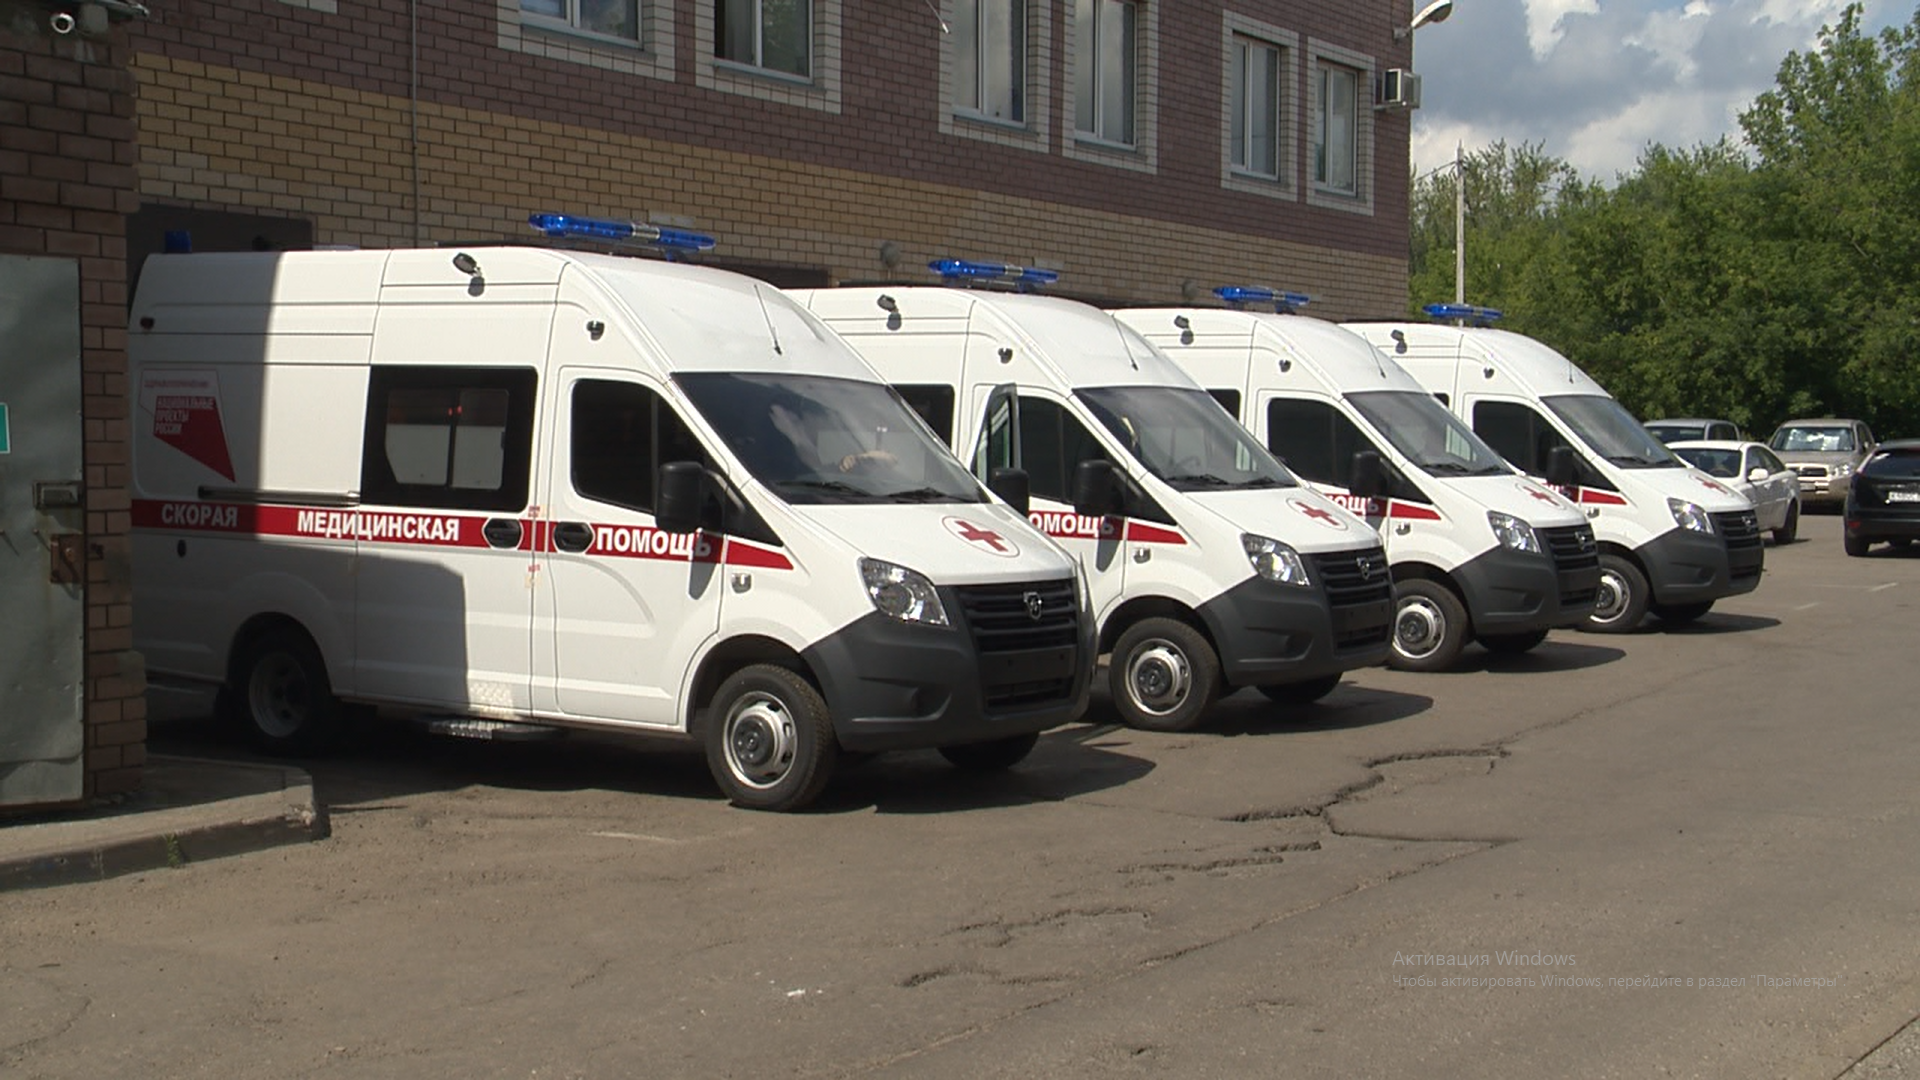 52 новых автомобиля закупили для работы нижегородской службы скорой медицинской помощи